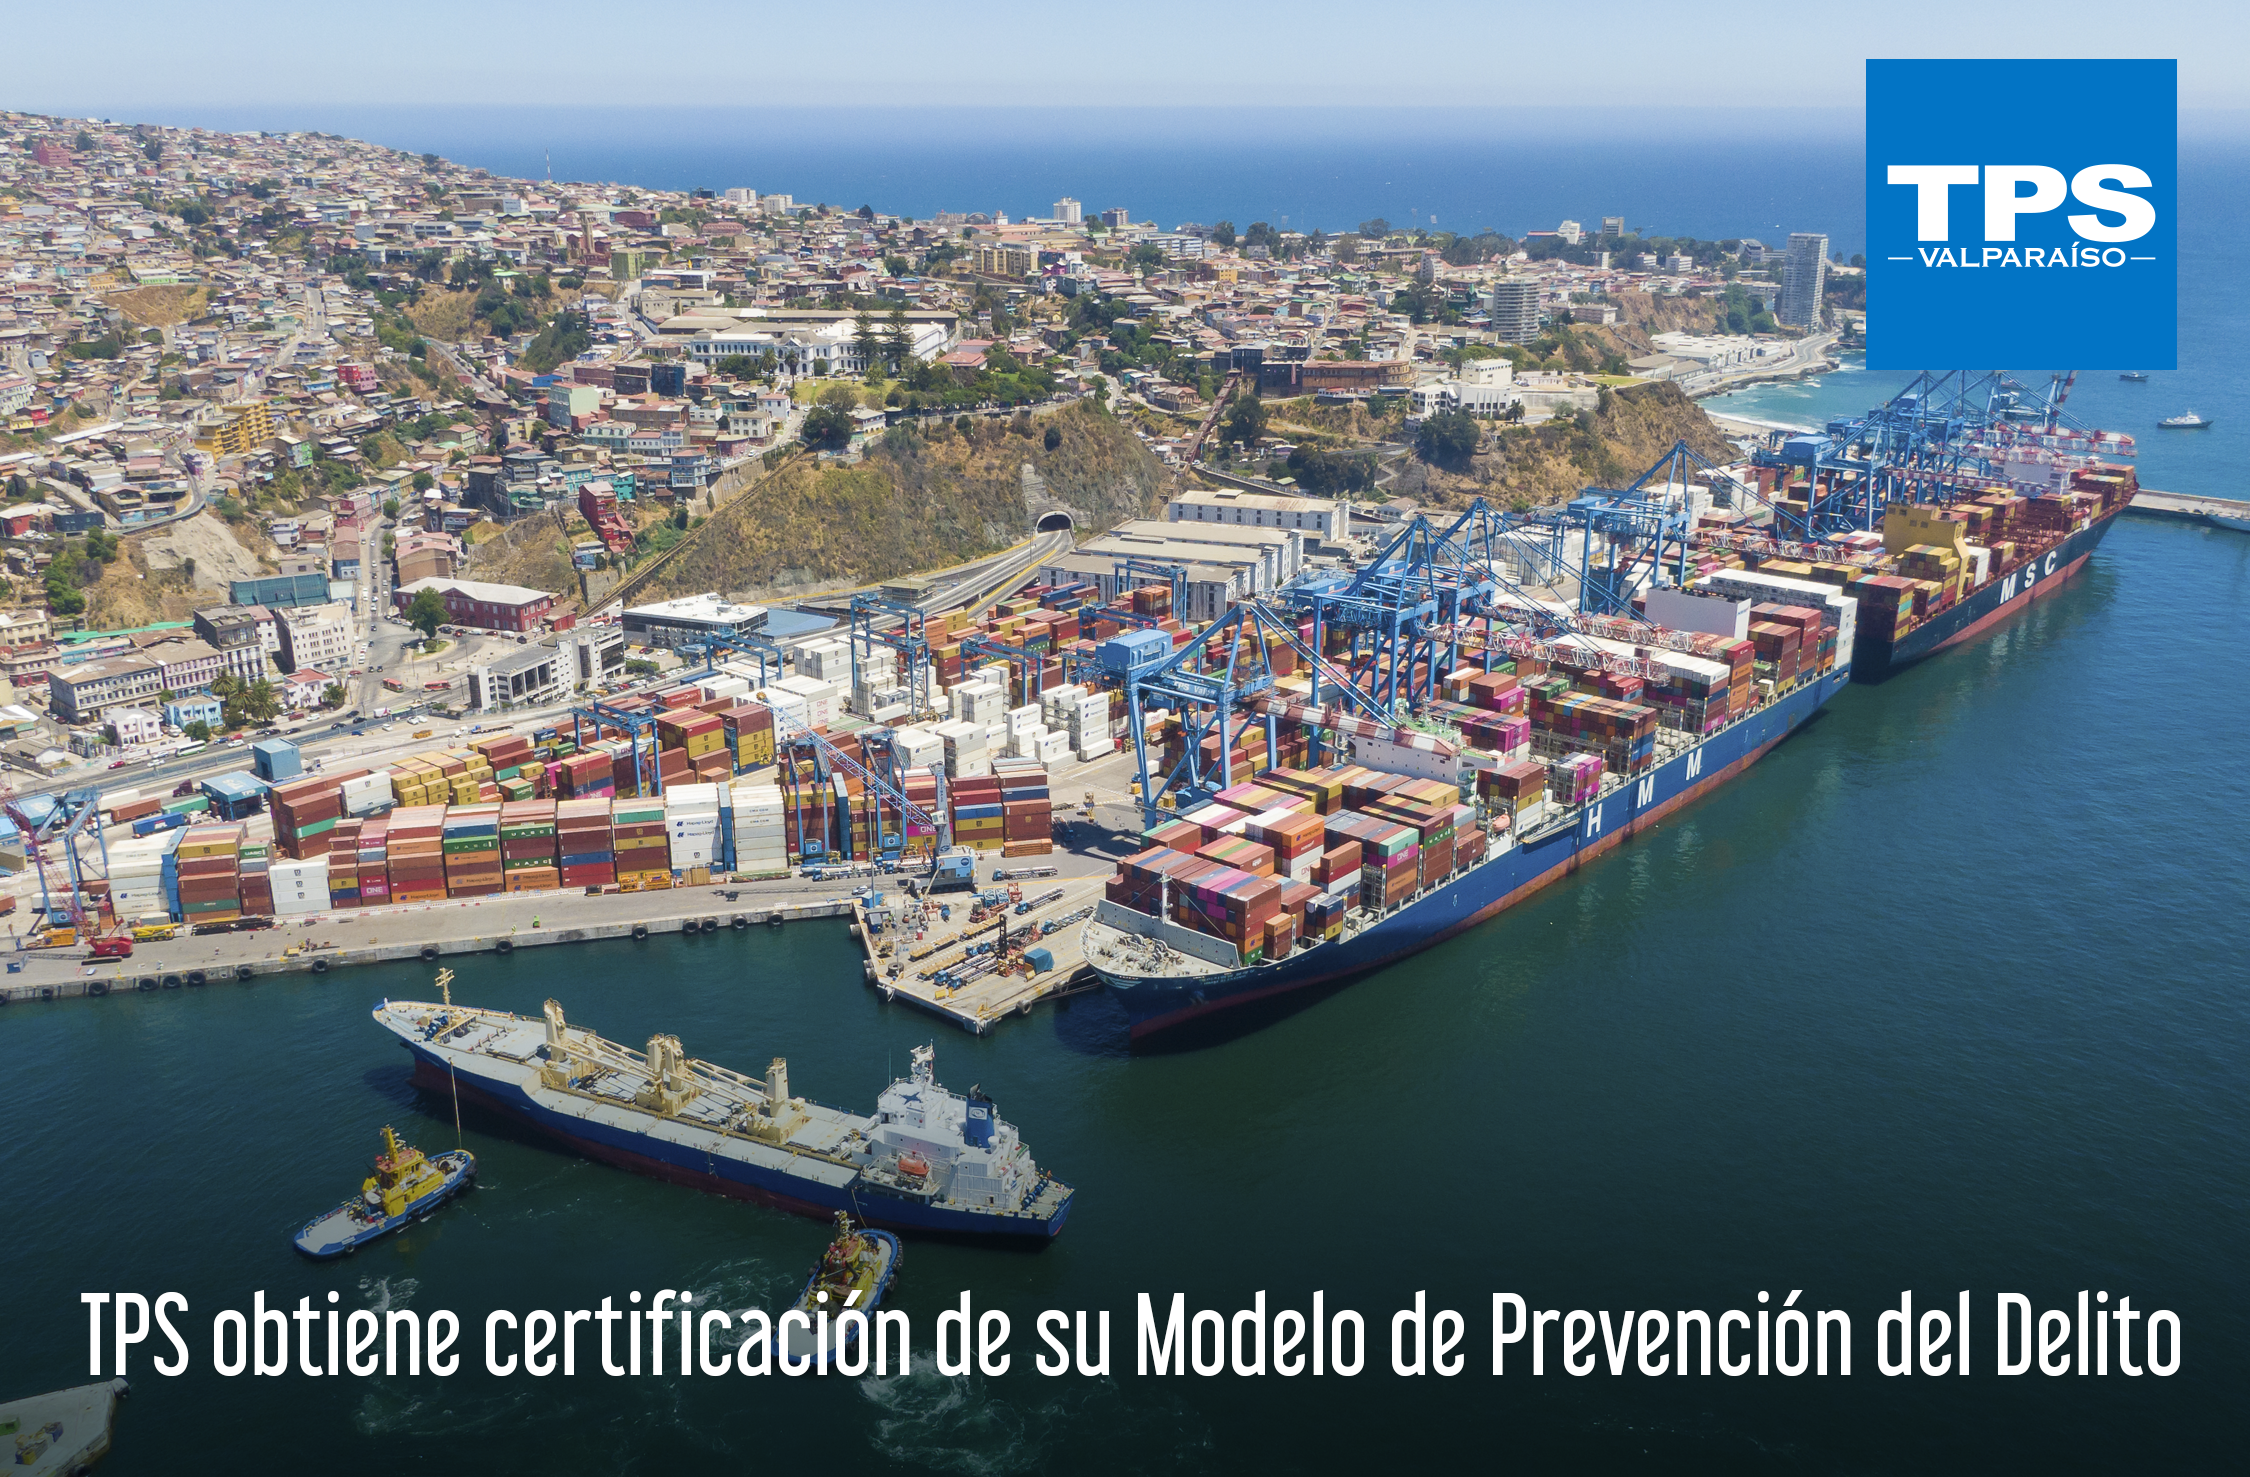 TPS obtiene certificación de su Modelo de Prevención del Delito - TPS